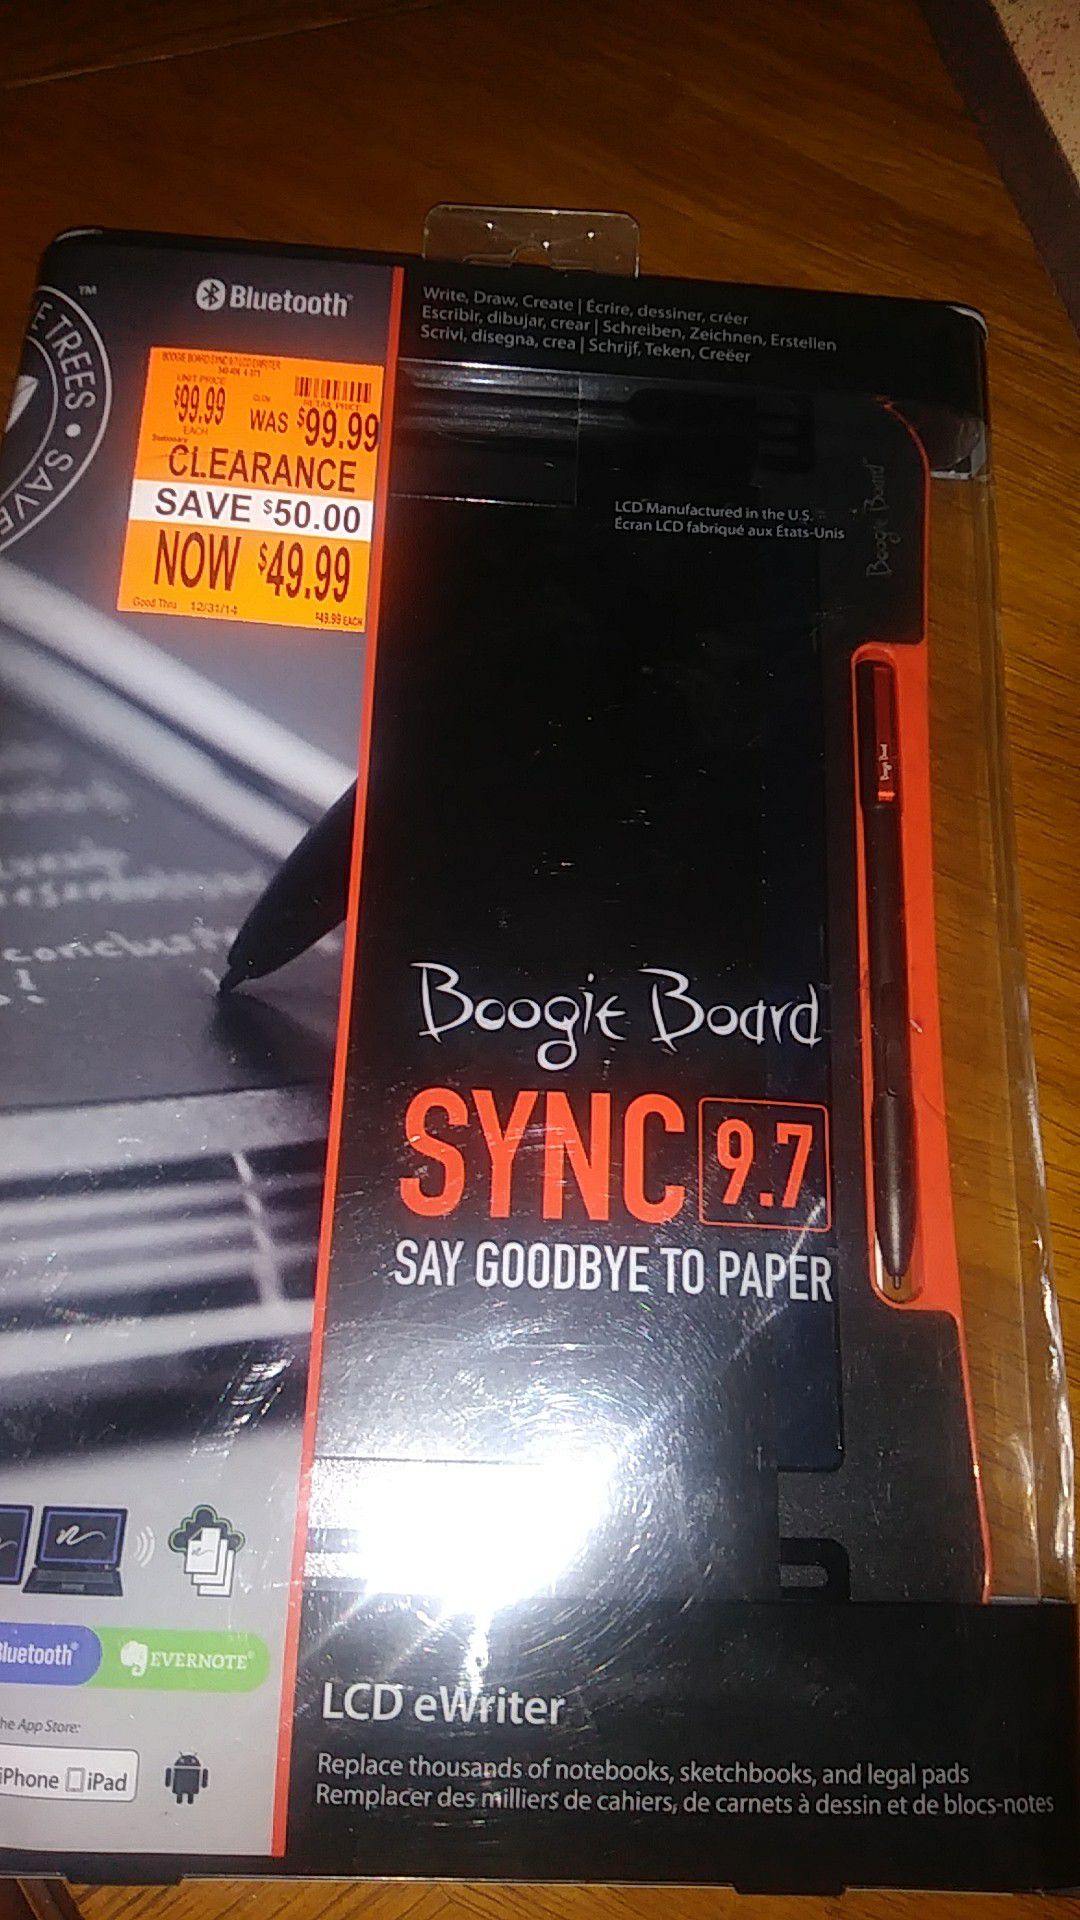 BOOGIE BOARD SYNC 9.7